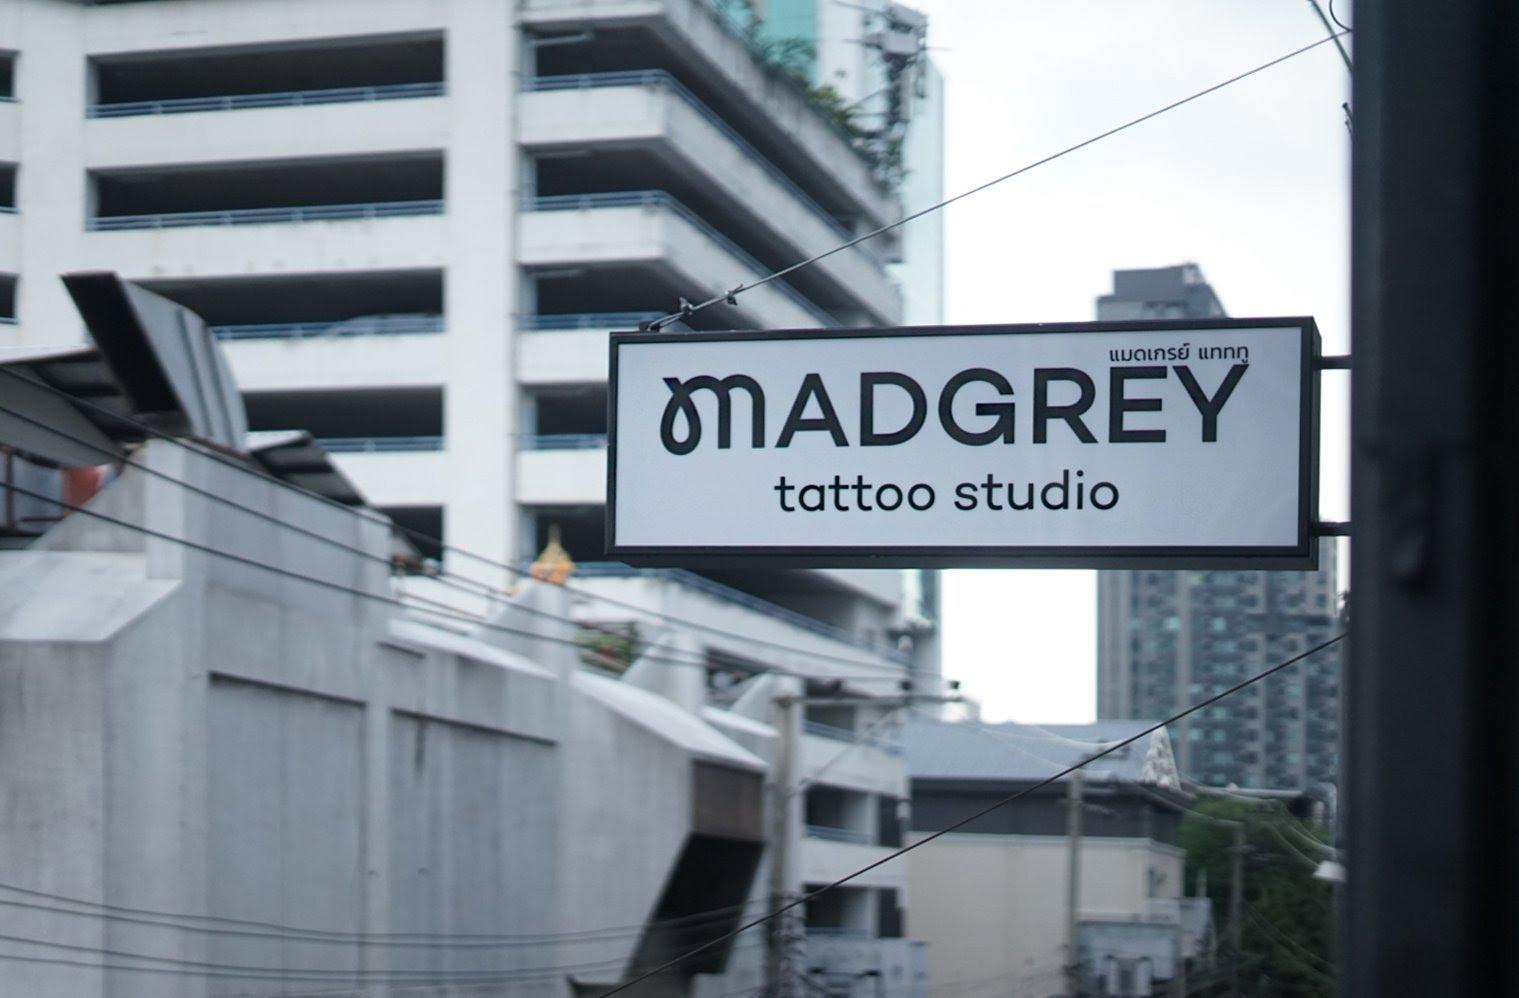 อาจเป็นรูปภาพของ กลางแจ้ง และ ข้อความพูดว่า "MADGREY แทททู แมดเกรย์ tattoo studio"